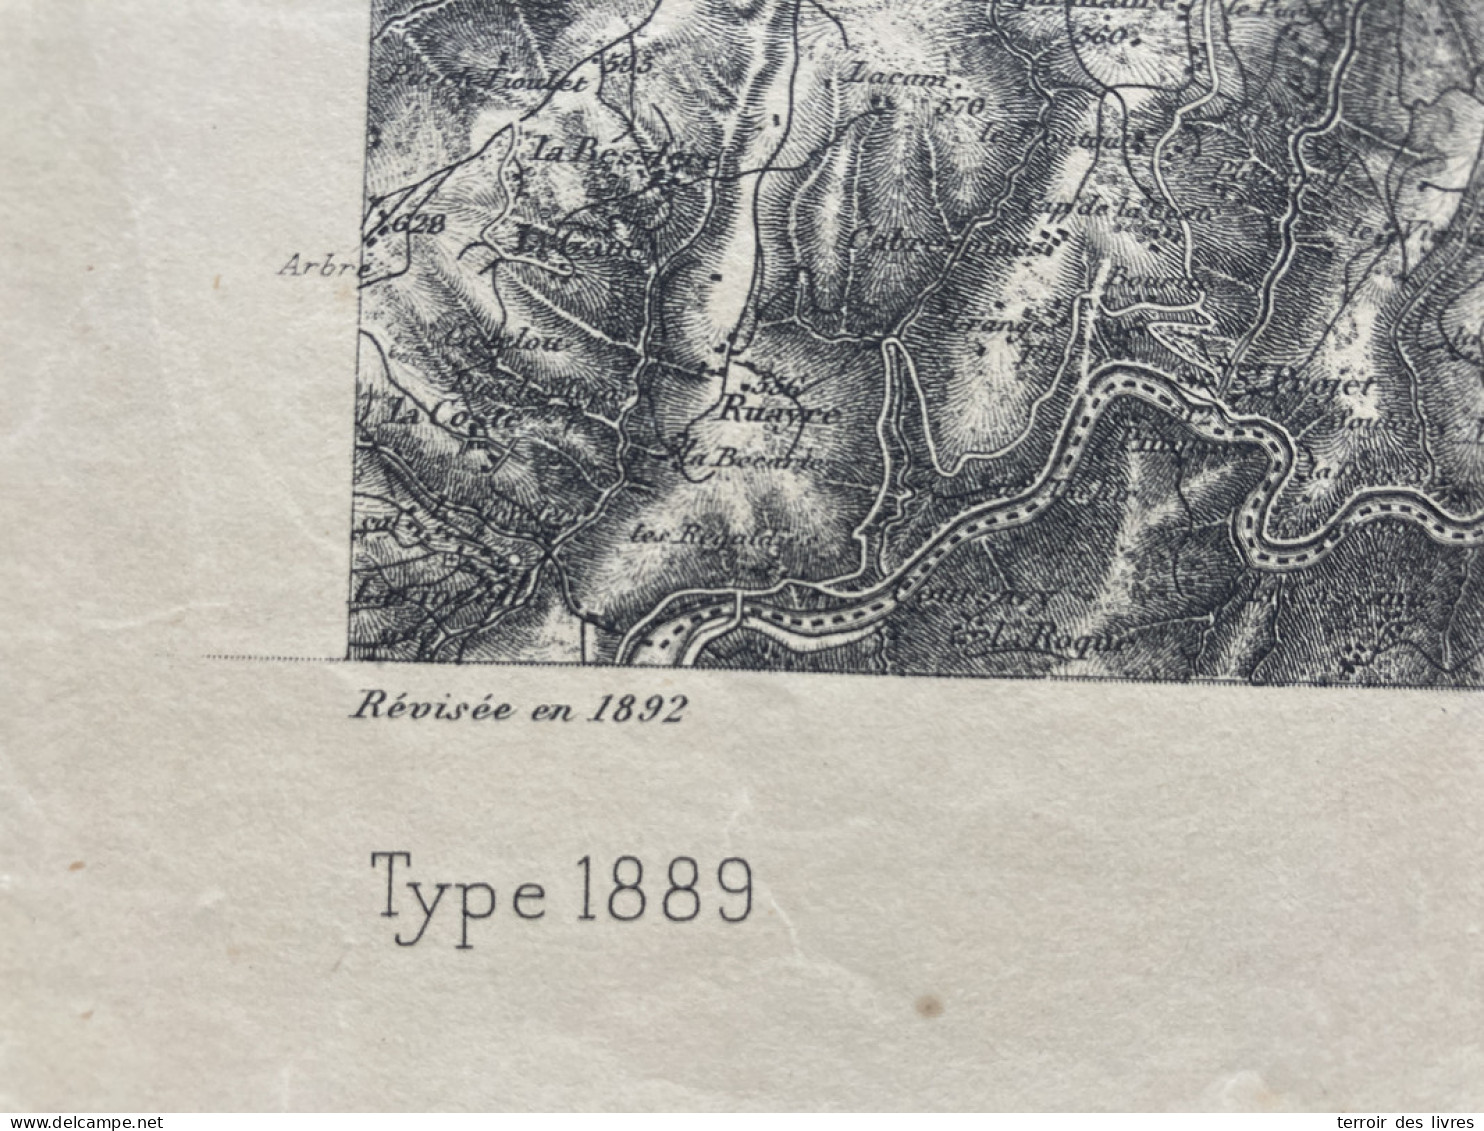 Carte état Major FIGEAC 1892 35x54cm LADINHAC LEUCAMP LAPEYRUGUE LABESSERETTE SANSAC-VEINAZES MUROLS LAFEUILLADE-EN-VEZI - Cartes Géographiques